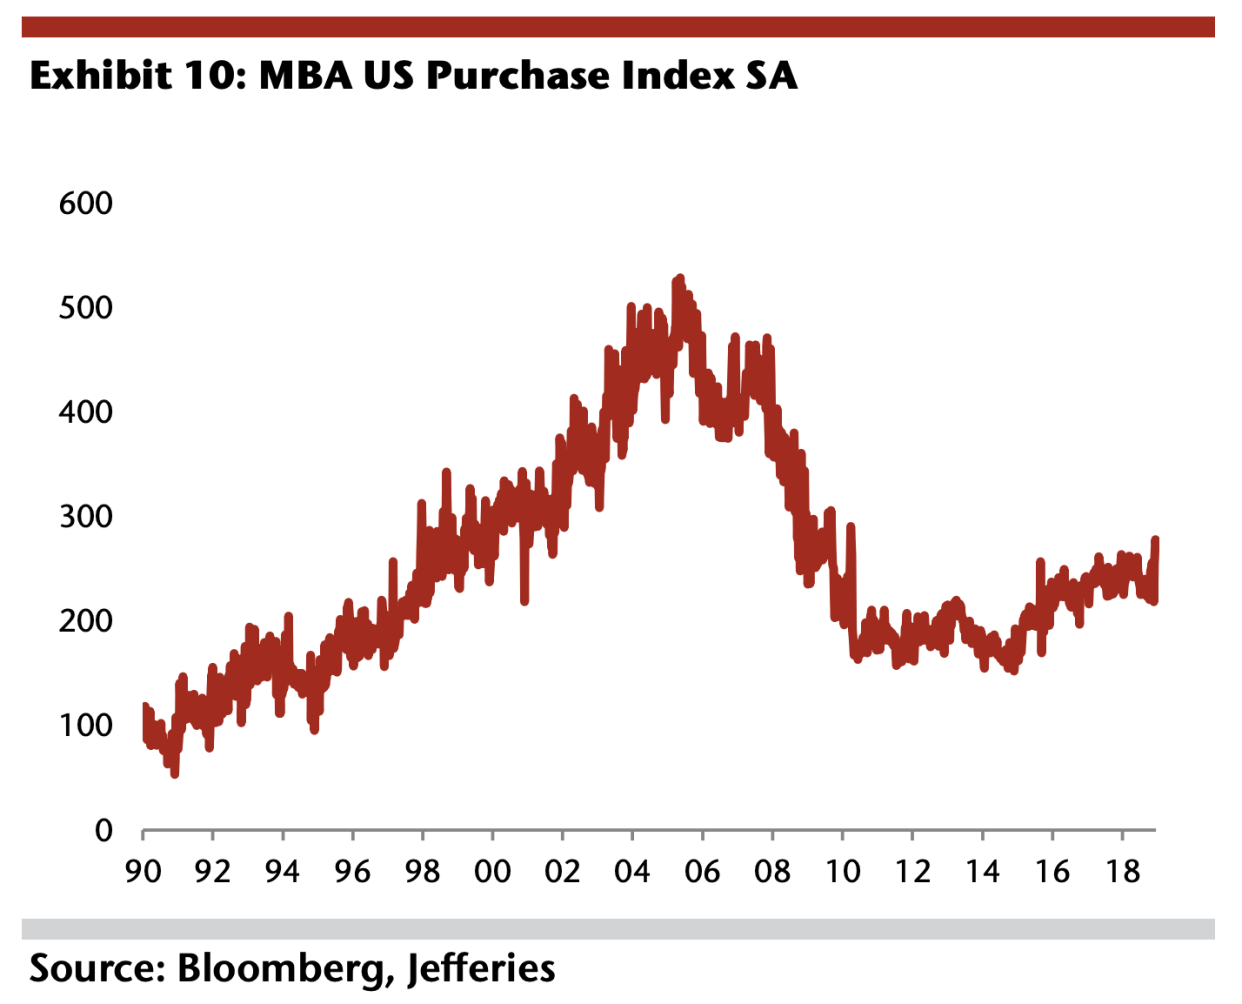 MBA US Purchase Index, seasonally adjusted.